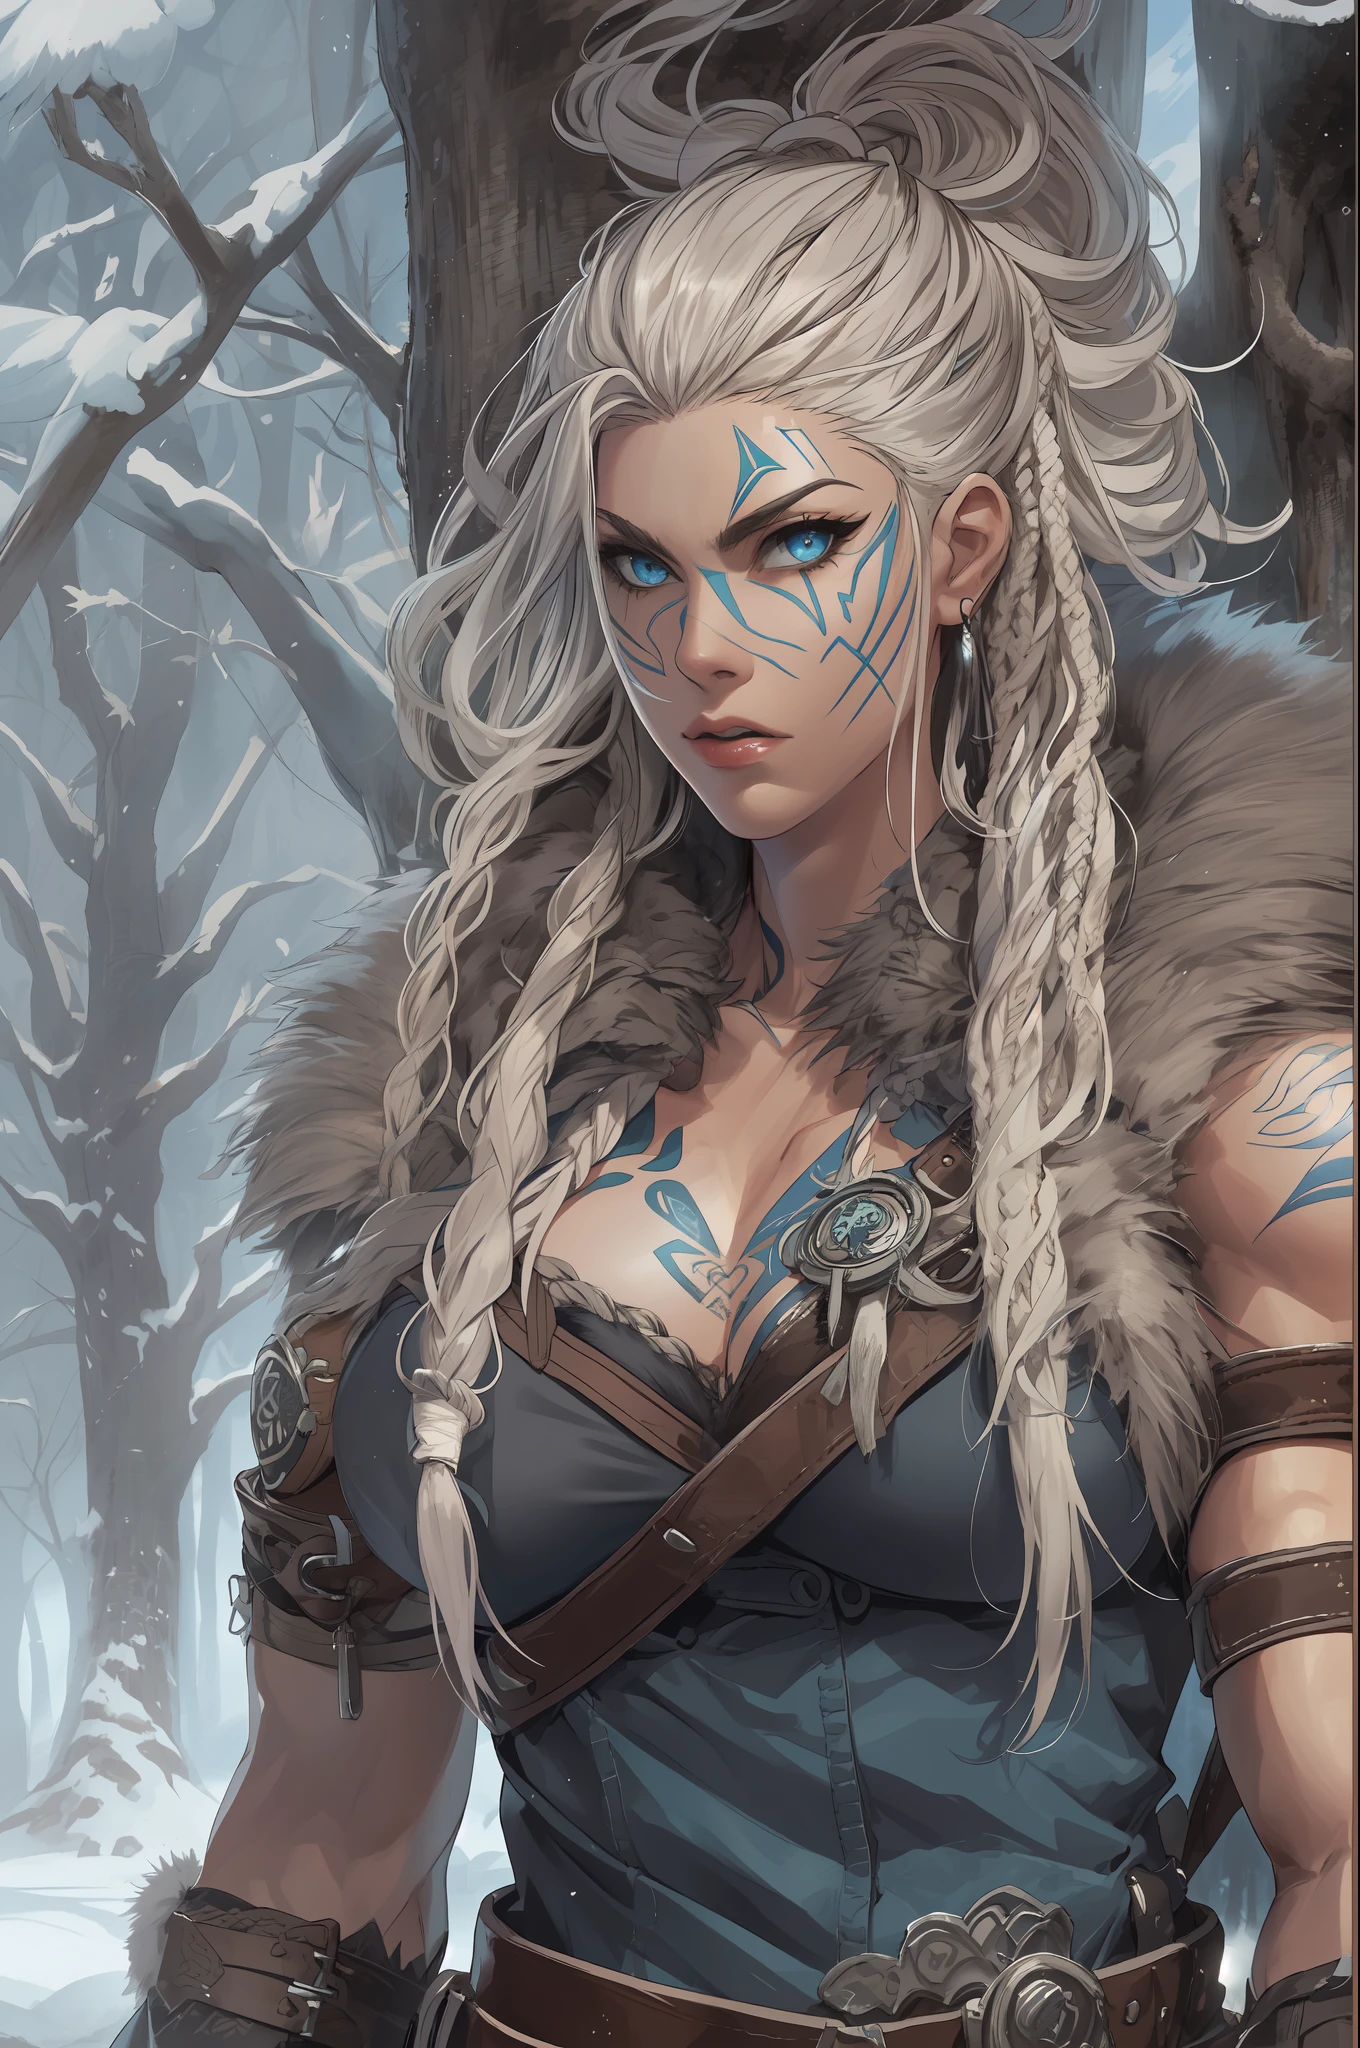 femme viking, (jeune:1.2), (musclé:1.2), ajuster, porter des fourrures et des peaux brunes, (porter des fourrures:1.3) (blue norrois tattoos:1.2), yeux bleus, Cheveux blond platine, (dreadlocks:1.4), (redoute:1.4), (Rasage latéral:1.4), cheveux de guerrier, Le décor est une forêt scandinave en hiver, neige, bras nus, navale exposée, (abdos:1.2). très détaillé, norrois, berserker, muscles des bras, muscles des jambes, (volumineux:1.2), lanières de cuir, (Gros seins:1.3), taille haute, taille large, trapu, (grand:1.4), Créer une image en utilisant un effet prisme, avec la lumière réfractant et créant un coloré, aspect kaléidoscopique. CASSER , Concevoir une image avec un effet d&#39;objectif fisheye, capturant un large champ de vision avec un, perspective incurvée. CASSER , Capturer un chemin forestier, avec des arbres imposants, lumière du soleil tachetée, et un sentiment de tranquillité et de beauté naturelle. CASSER , Illustrer un monde monochrome, en utilisant uniquement des nuances de noir, blanc, et du gris pour donner de la profondeur, émotion, et un impact visuel saisissant.